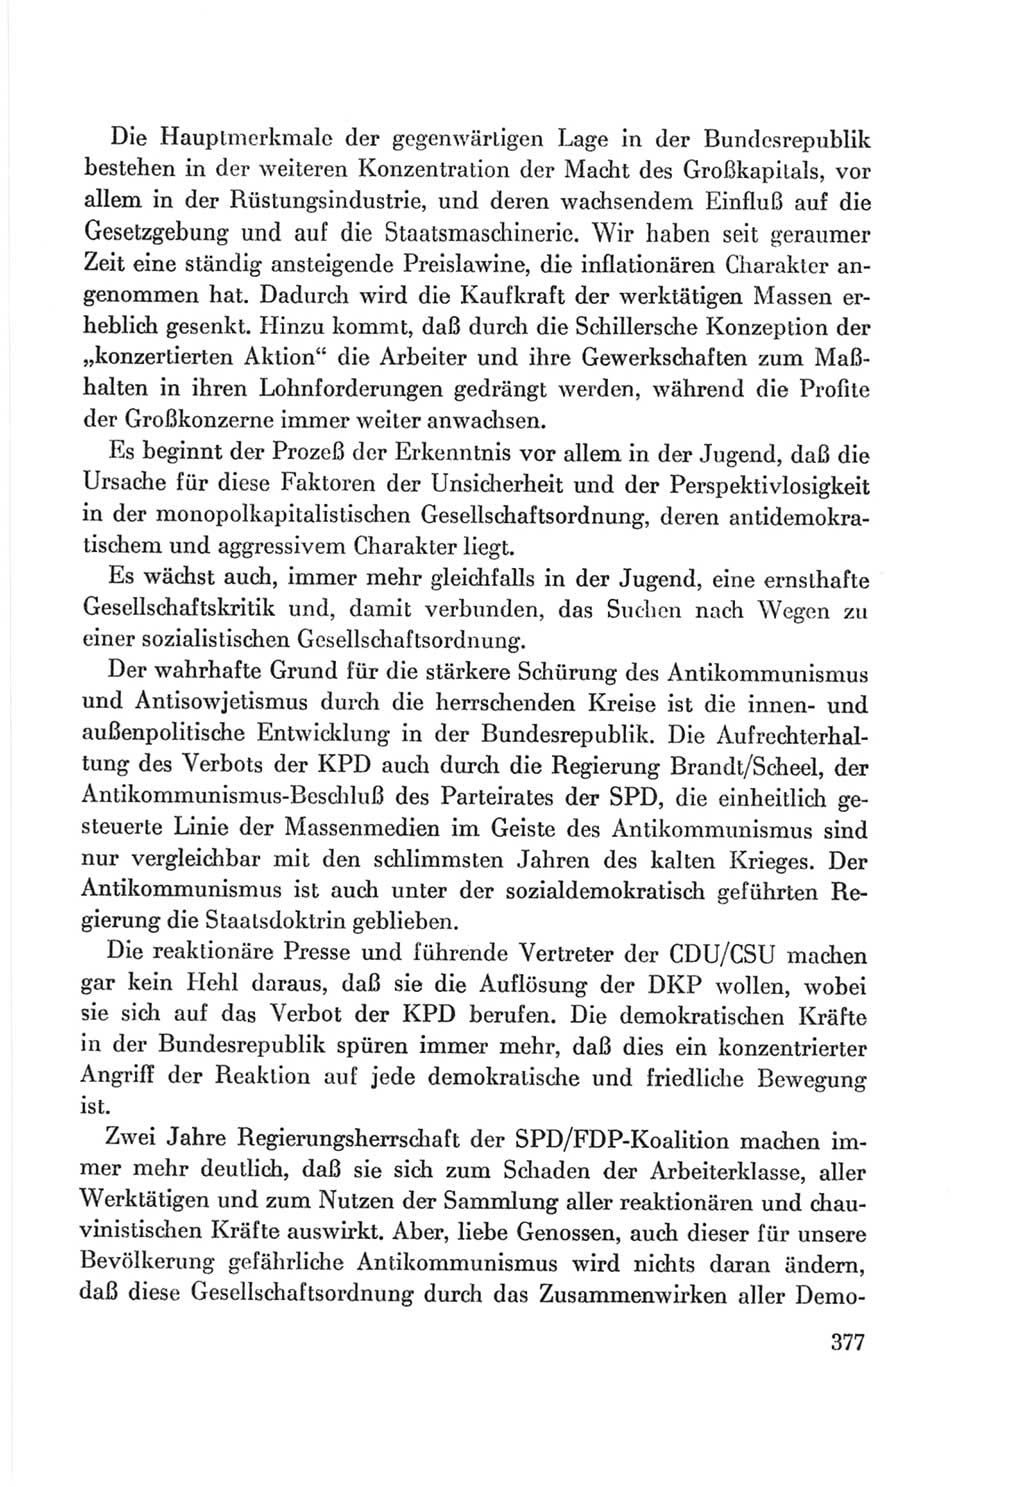 Protokoll der Verhandlungen des Ⅷ. Parteitages der Sozialistischen Einheitspartei Deutschlands (SED) [Deutsche Demokratische Republik (DDR)] 1971, Band 1, Seite 377 (Prot. Verh. Ⅷ. PT SED DDR 1971, Bd. 1, S. 377)